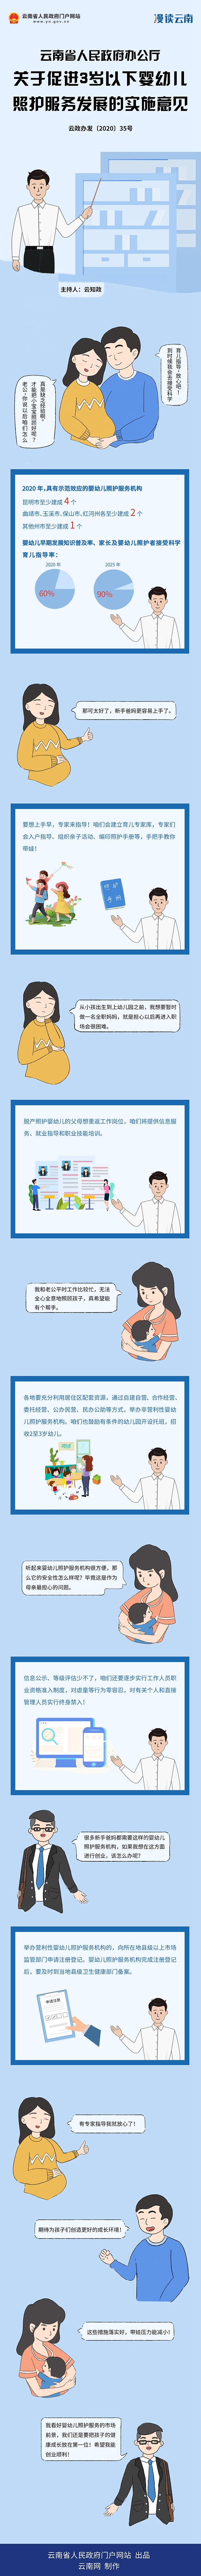 漫画解读《云南省人民政府办公厅关于促进3岁以下婴幼儿照护服务发展的实施意见.jpg